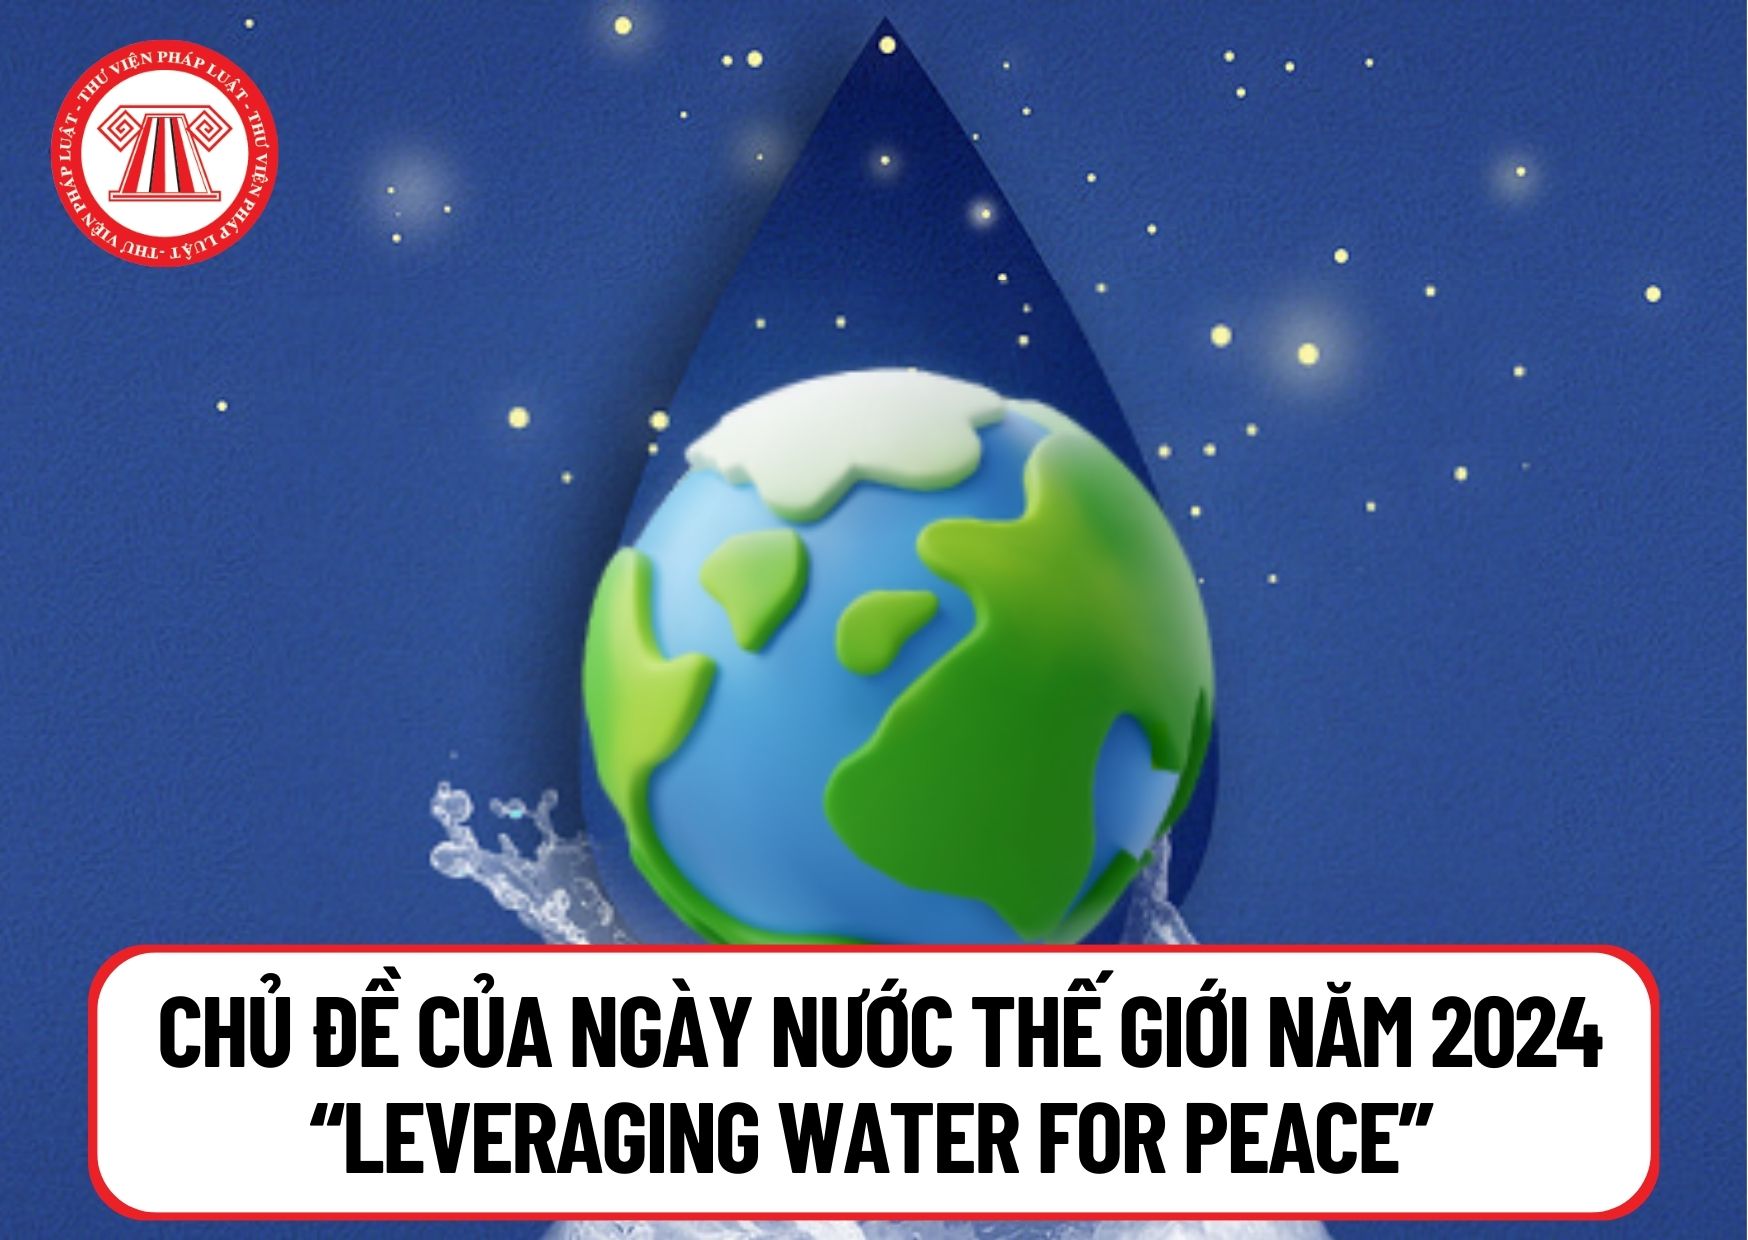 Ngày Nước thế giới 2024 là ngày nào? Chủ đề của Ngày Nước thế giới năm 2024 “Leveraging water for peace” có ý nghĩa gì?